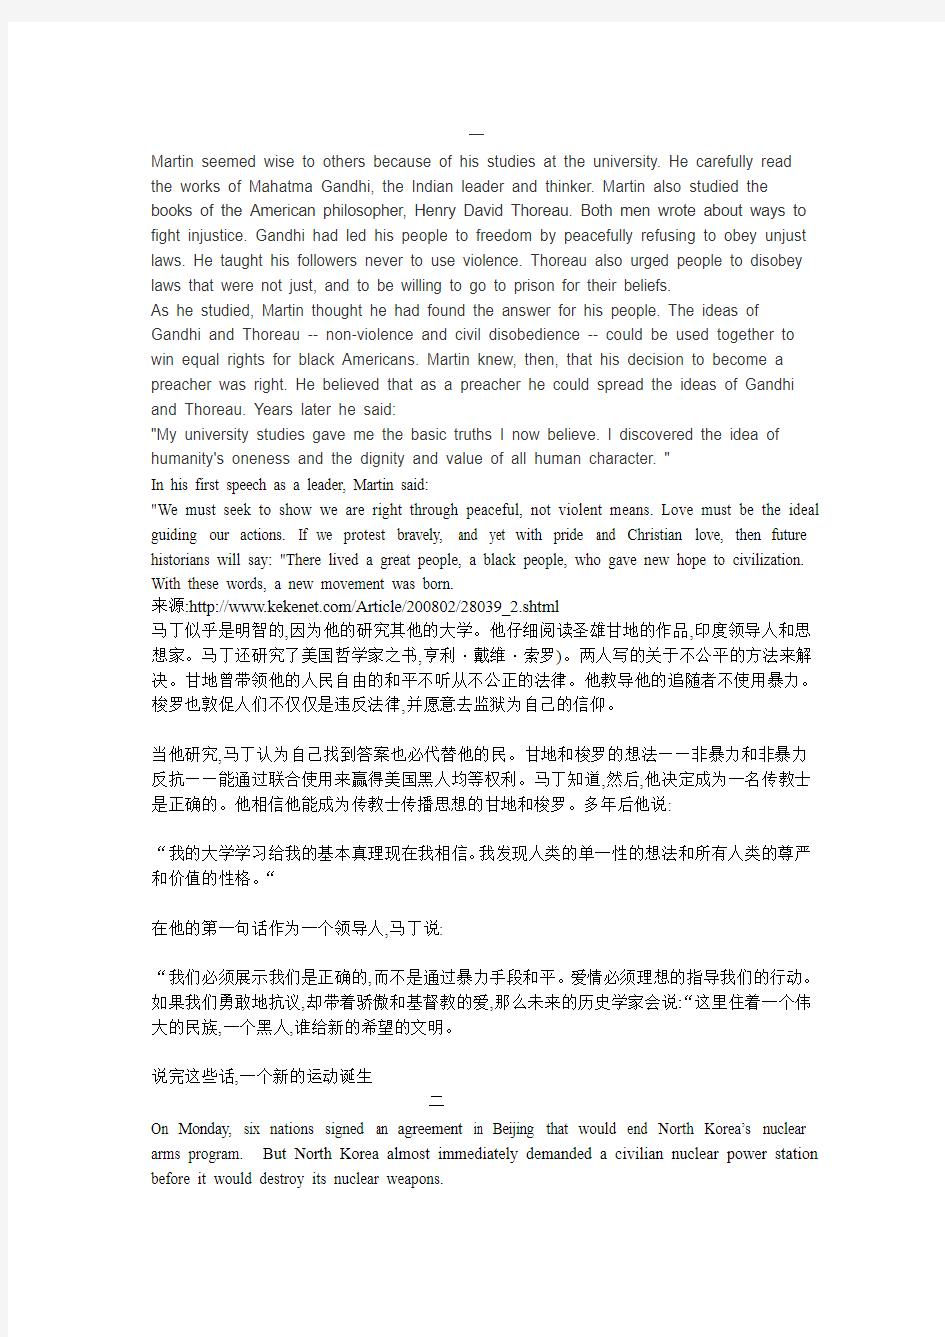 广西大学英语新闻听力(4)——中文版